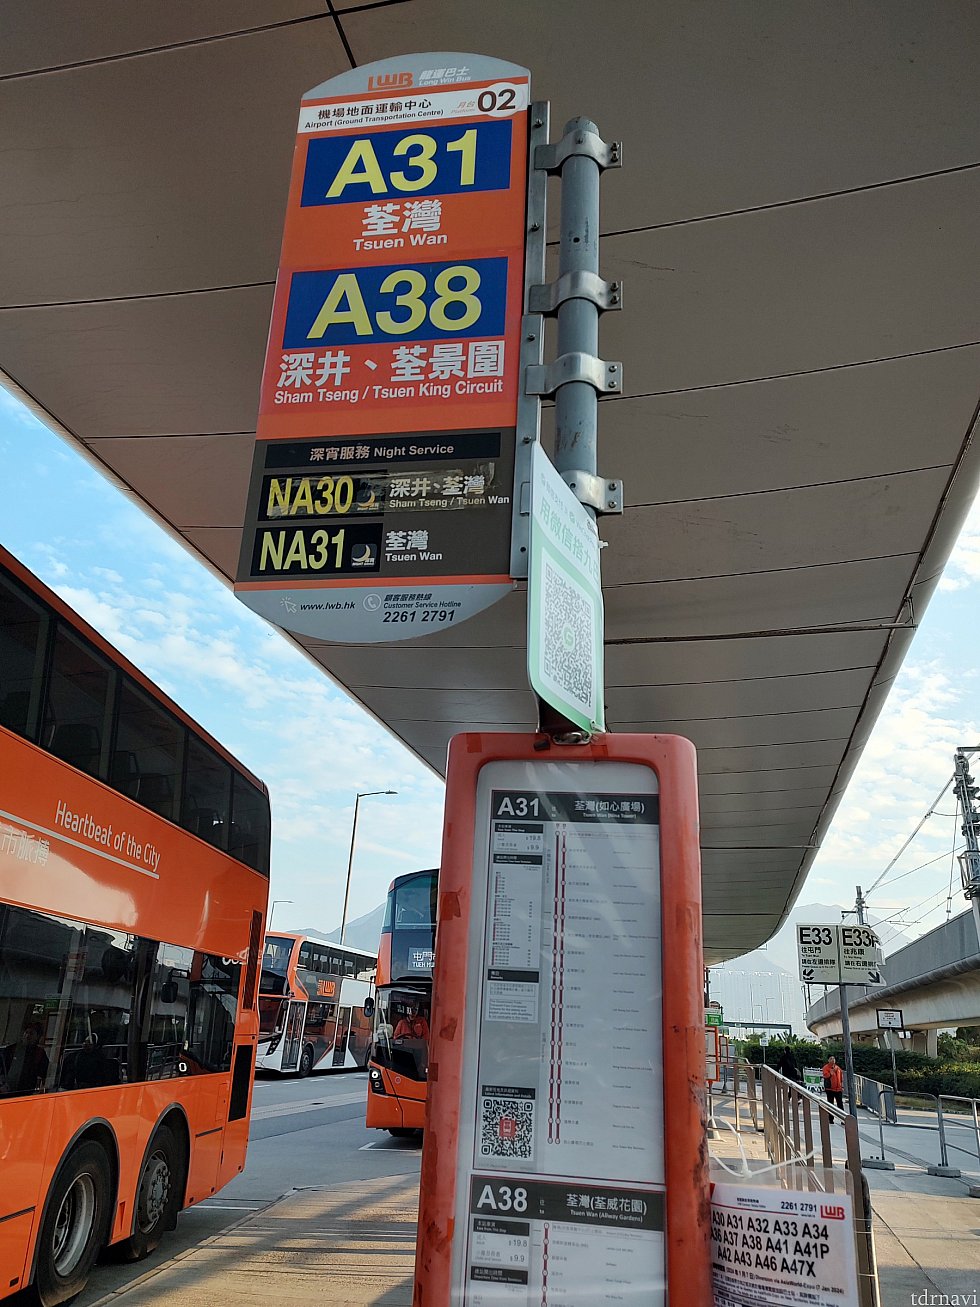 ホテル行きのバスはA31　お金は先払い18.9HKD オクトパスやクレカのタッチ決済も使えます。